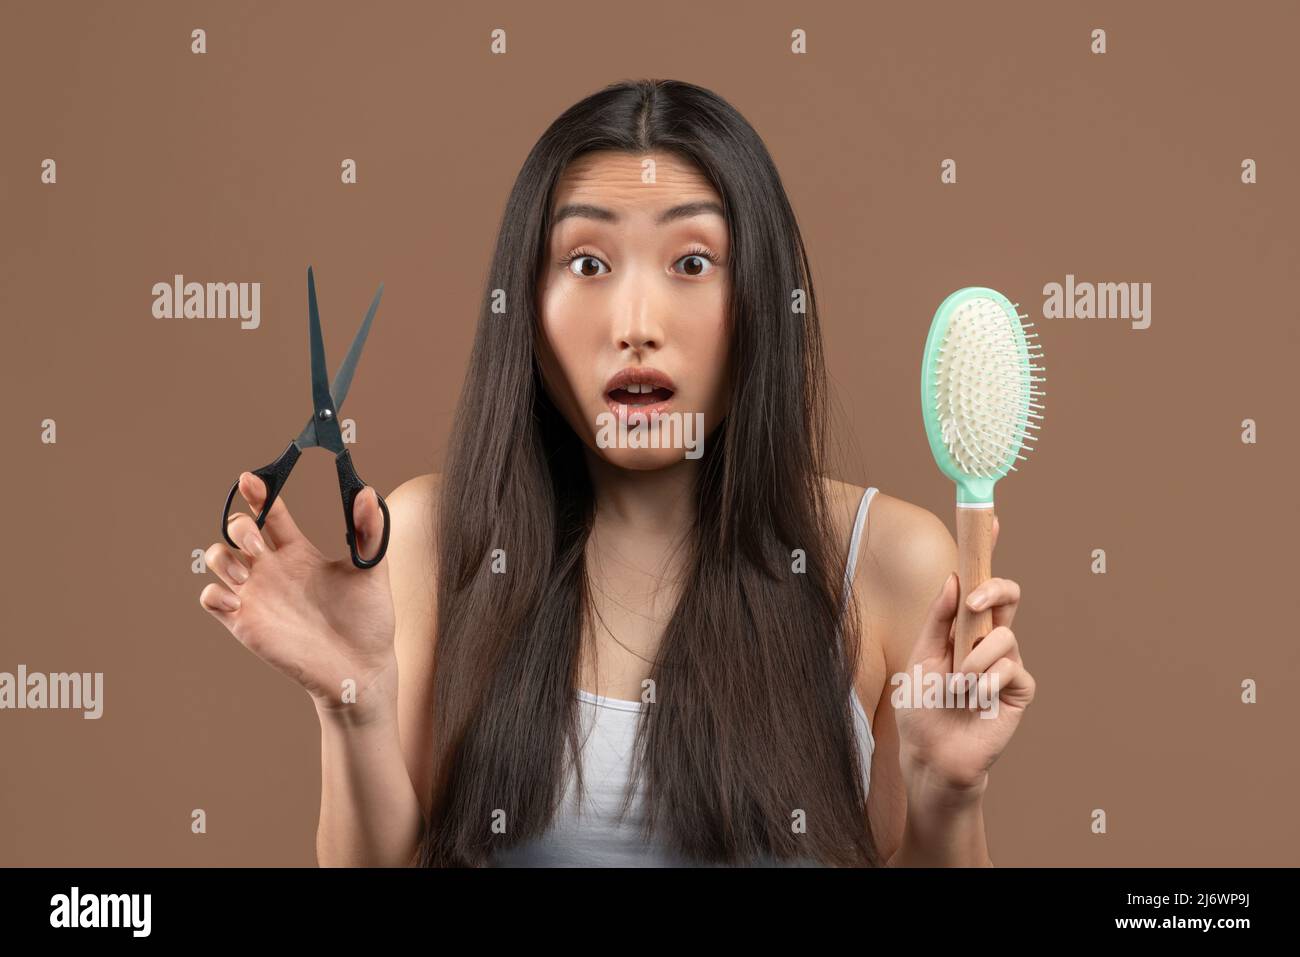 Schockierte asiatische Dame mit langen Haaren halten Kamm und Metallschere, dachte an professionelle Behandlung oder Mode Haarschnitt Stockfoto